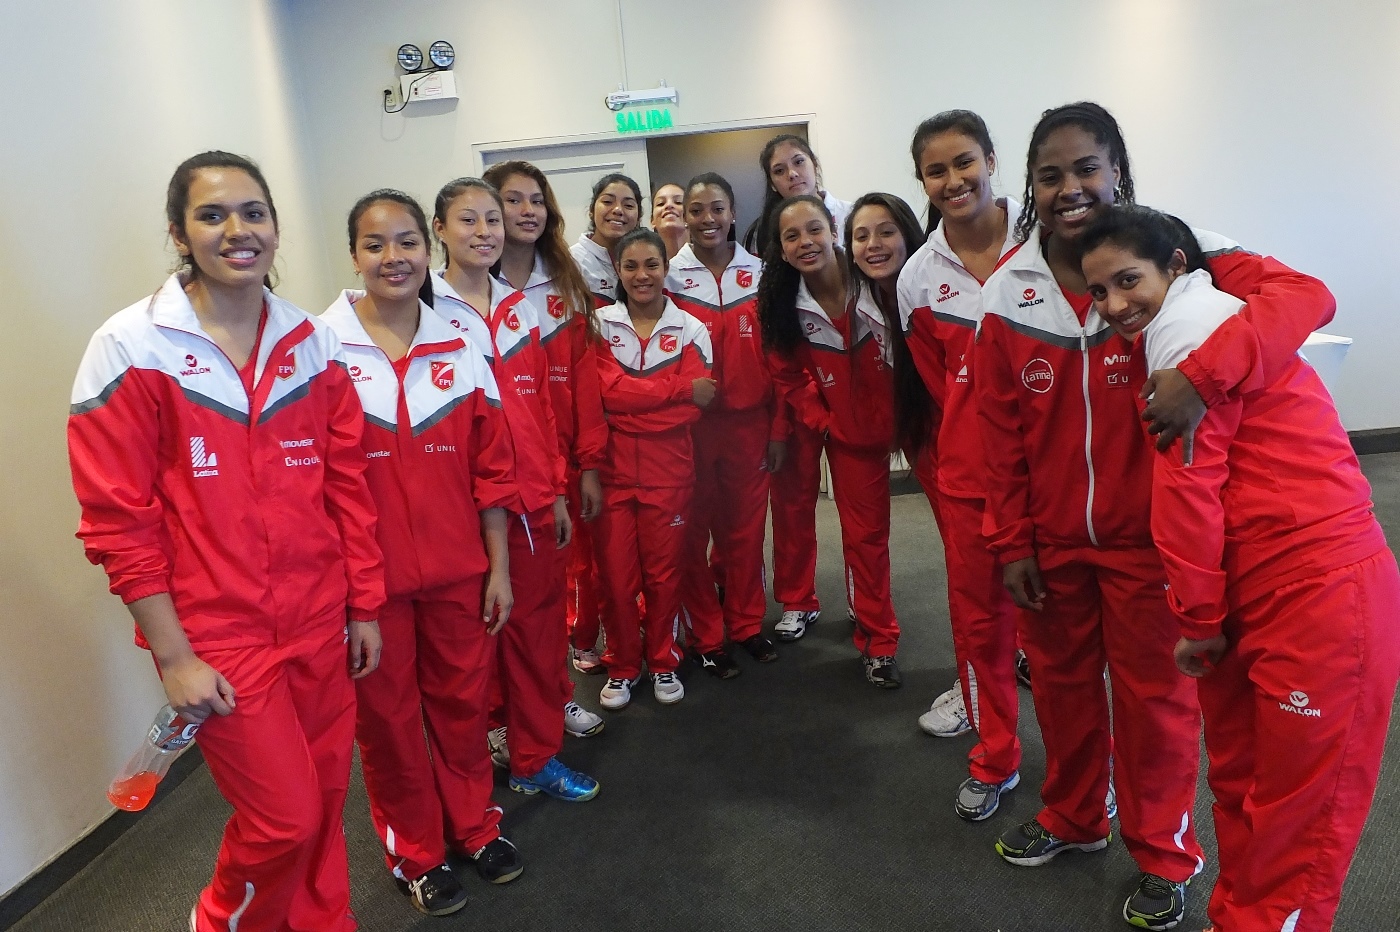 Faltan dos semanas para el inicio del Mundial Sub 18 – Perú 2015